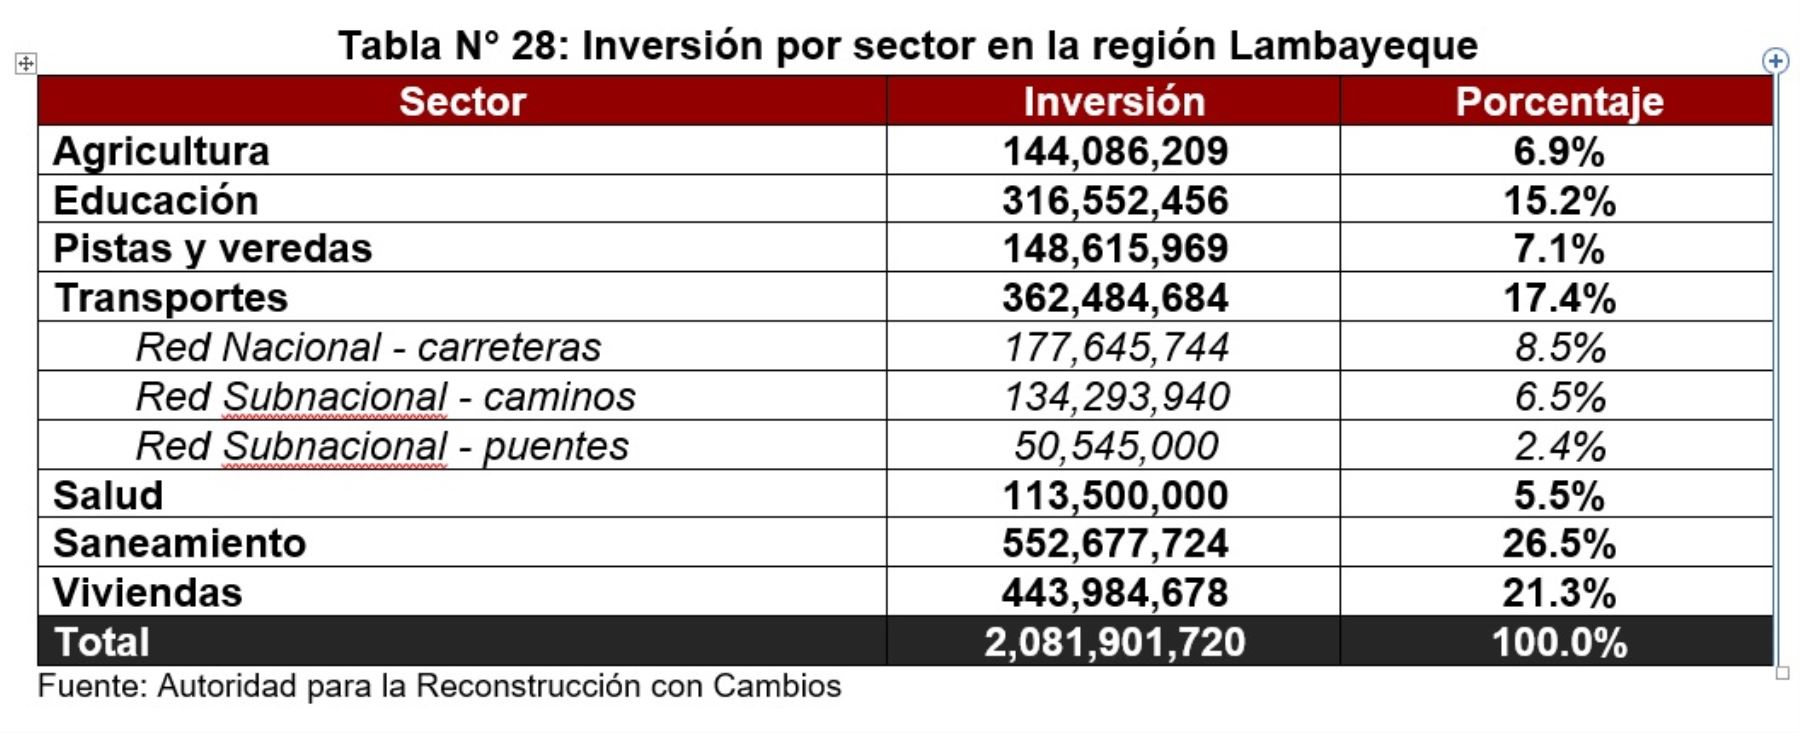 Inversión por sector en la región Lambayeque, según la versión definitiva del Plan Integral de la Reconstrucción con Cambios 2017.